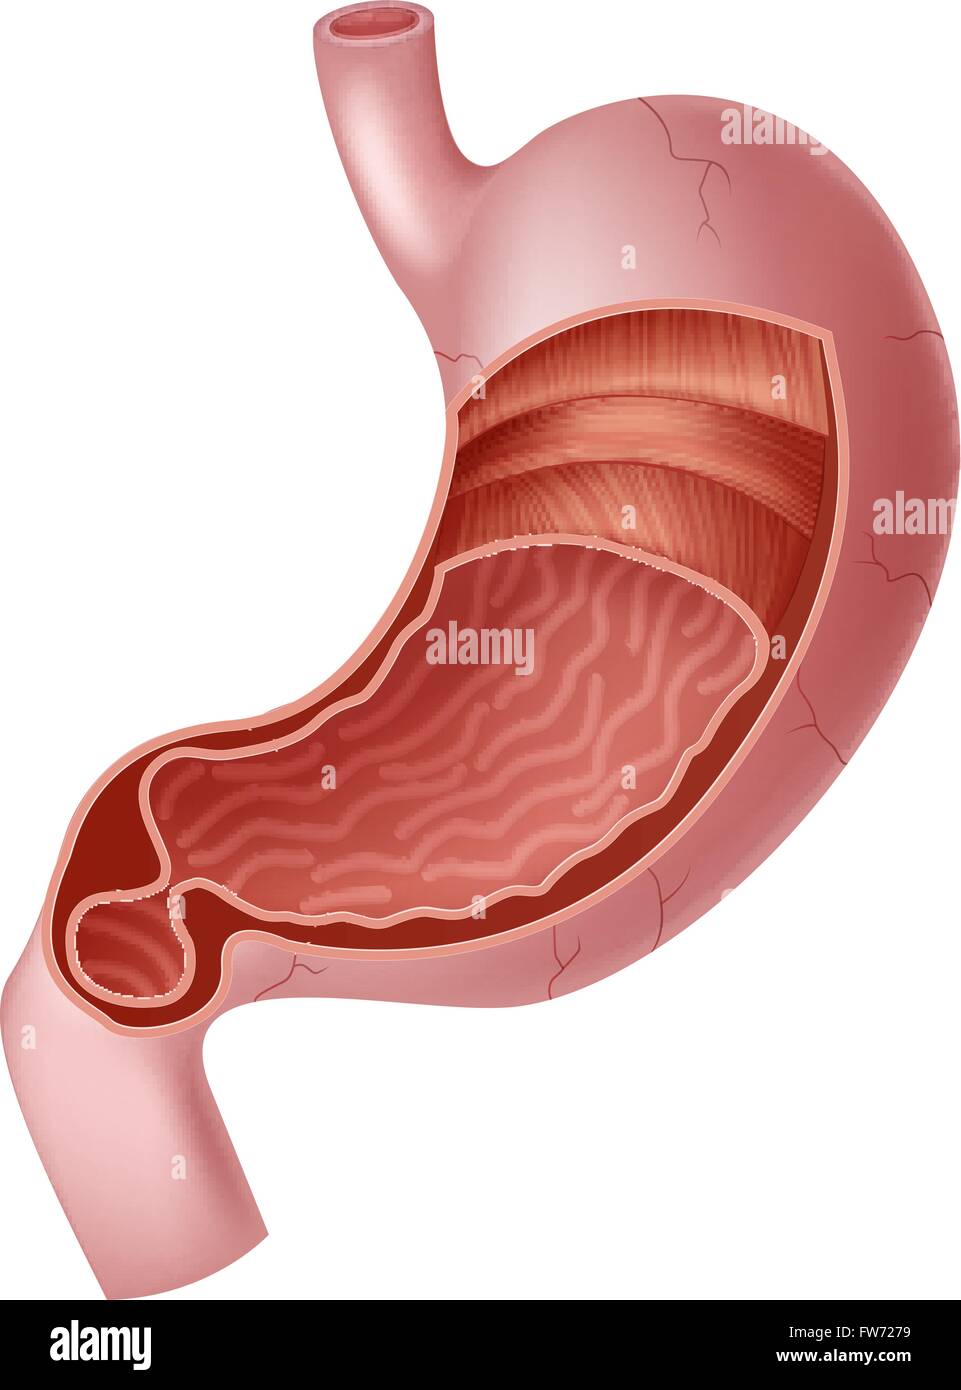 Illustrazione di umana interna Anatomia dello stomaco Illustrazione Vettoriale